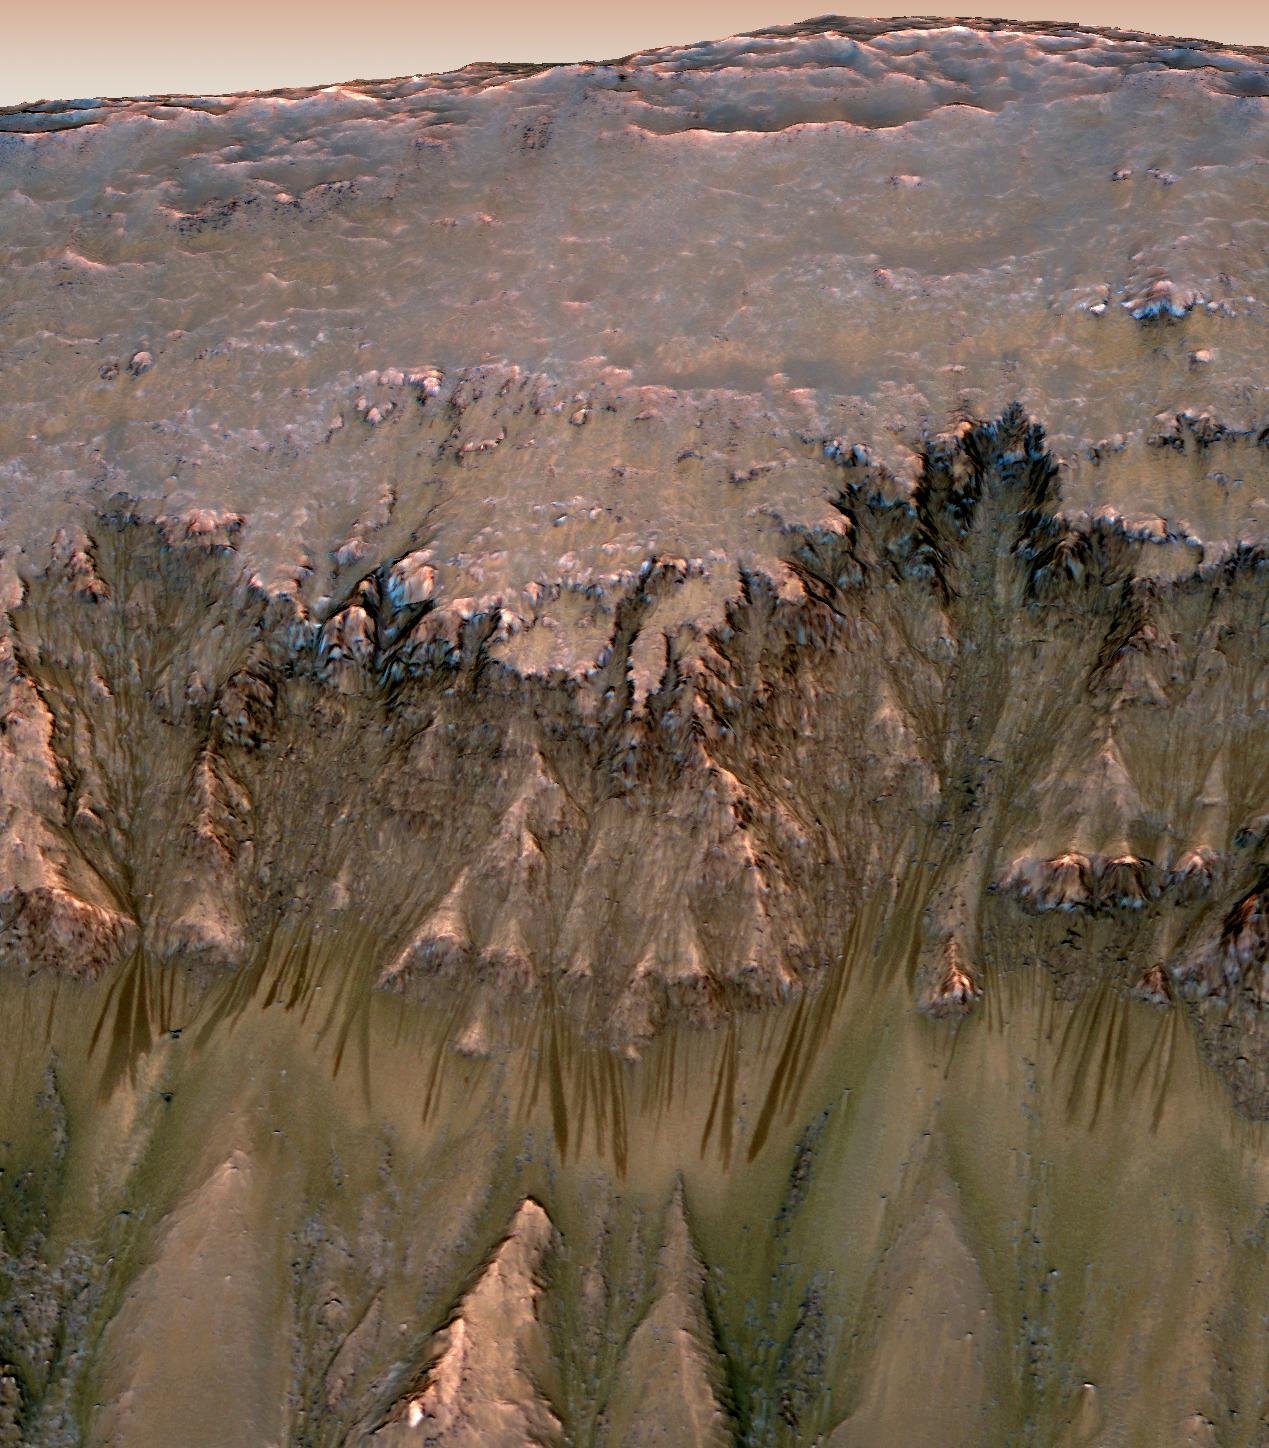 Sezonnye temnye polosy na Marse